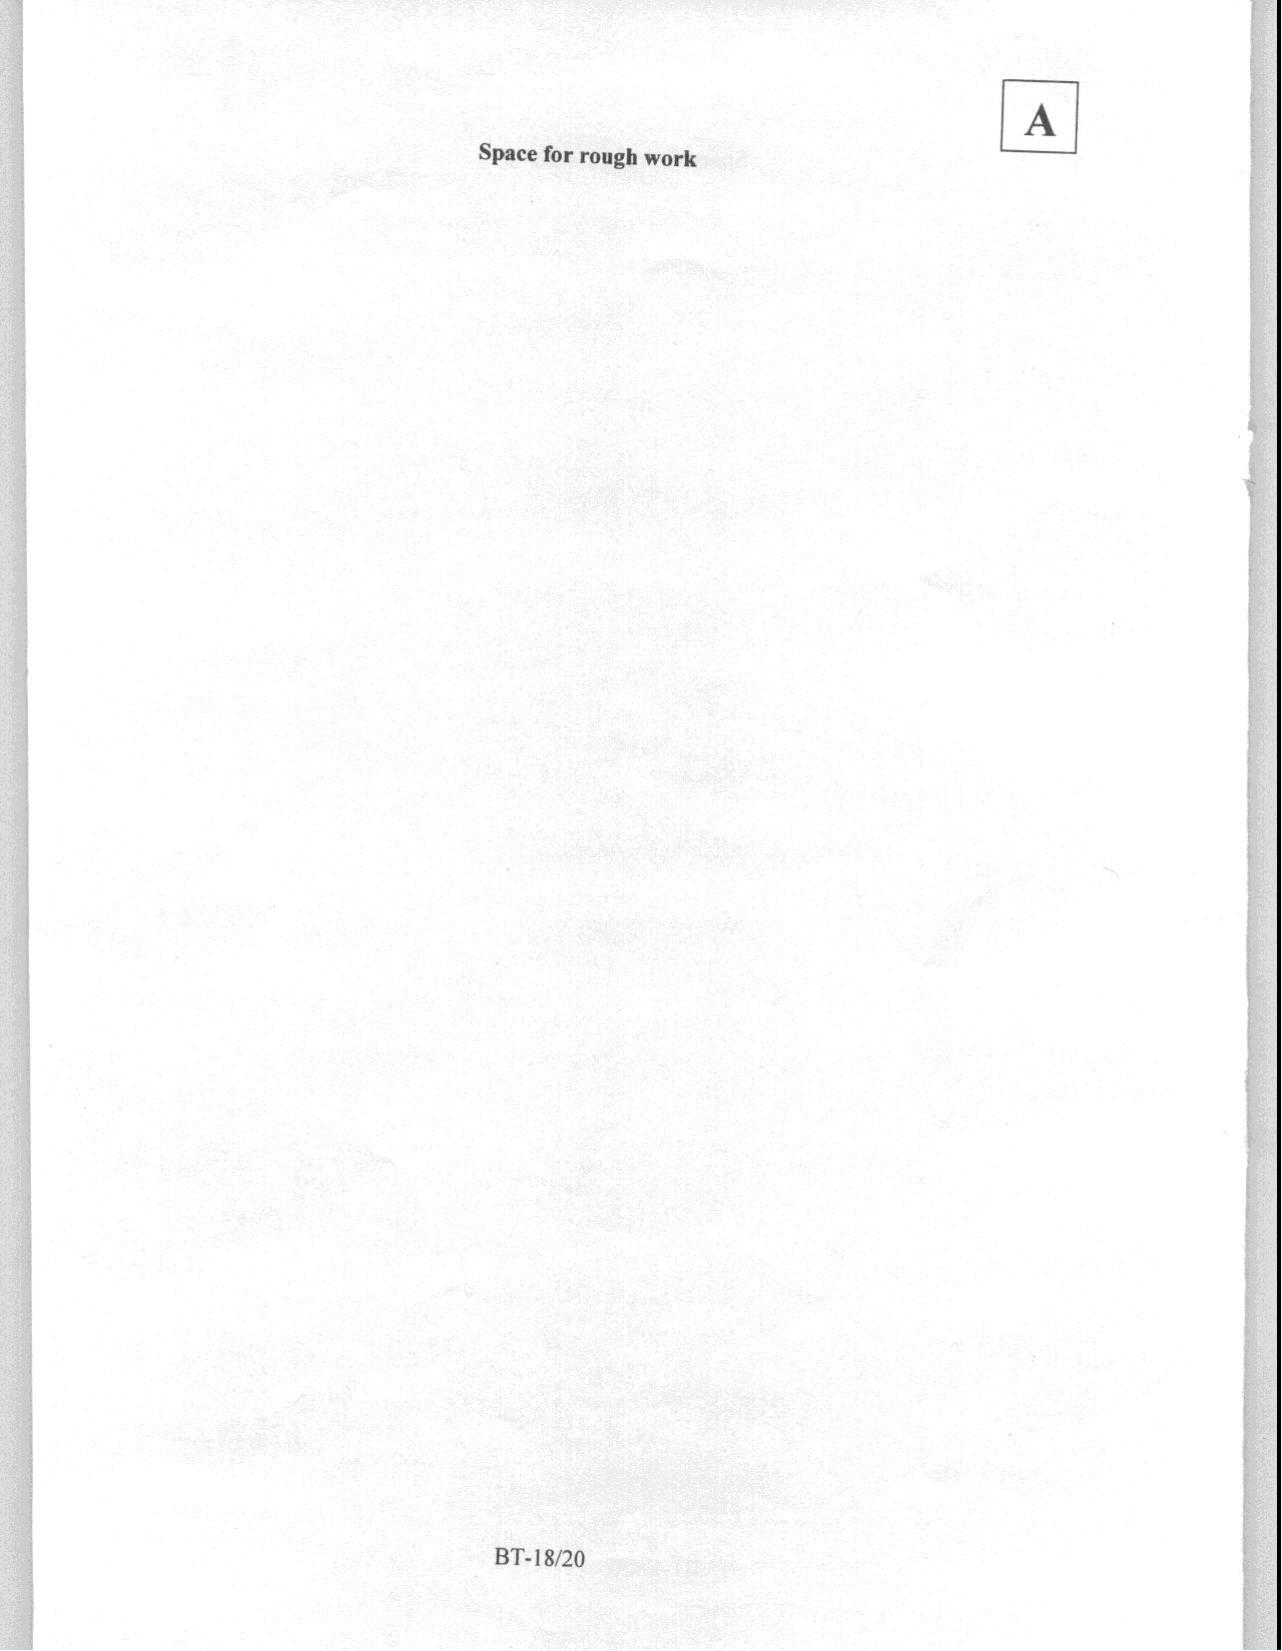 JAM 2008: BT Question Paper - Page 20